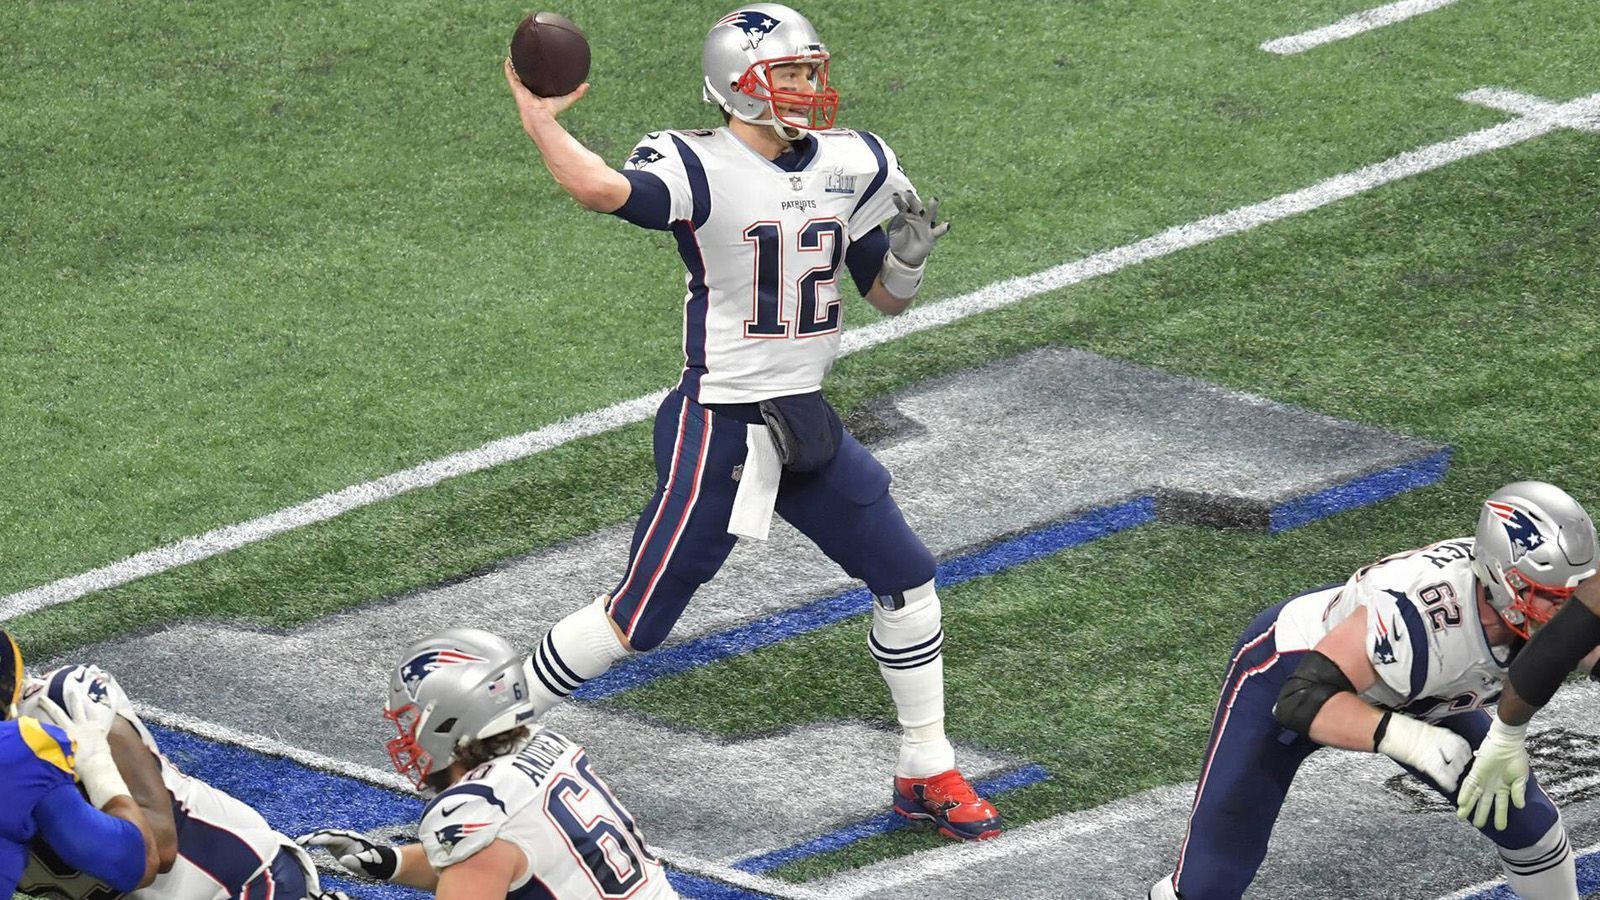 
                <strong>Platz 1: Tom Brady</strong><br>
                Team: New England PatriotsPosition: Quarterback
              